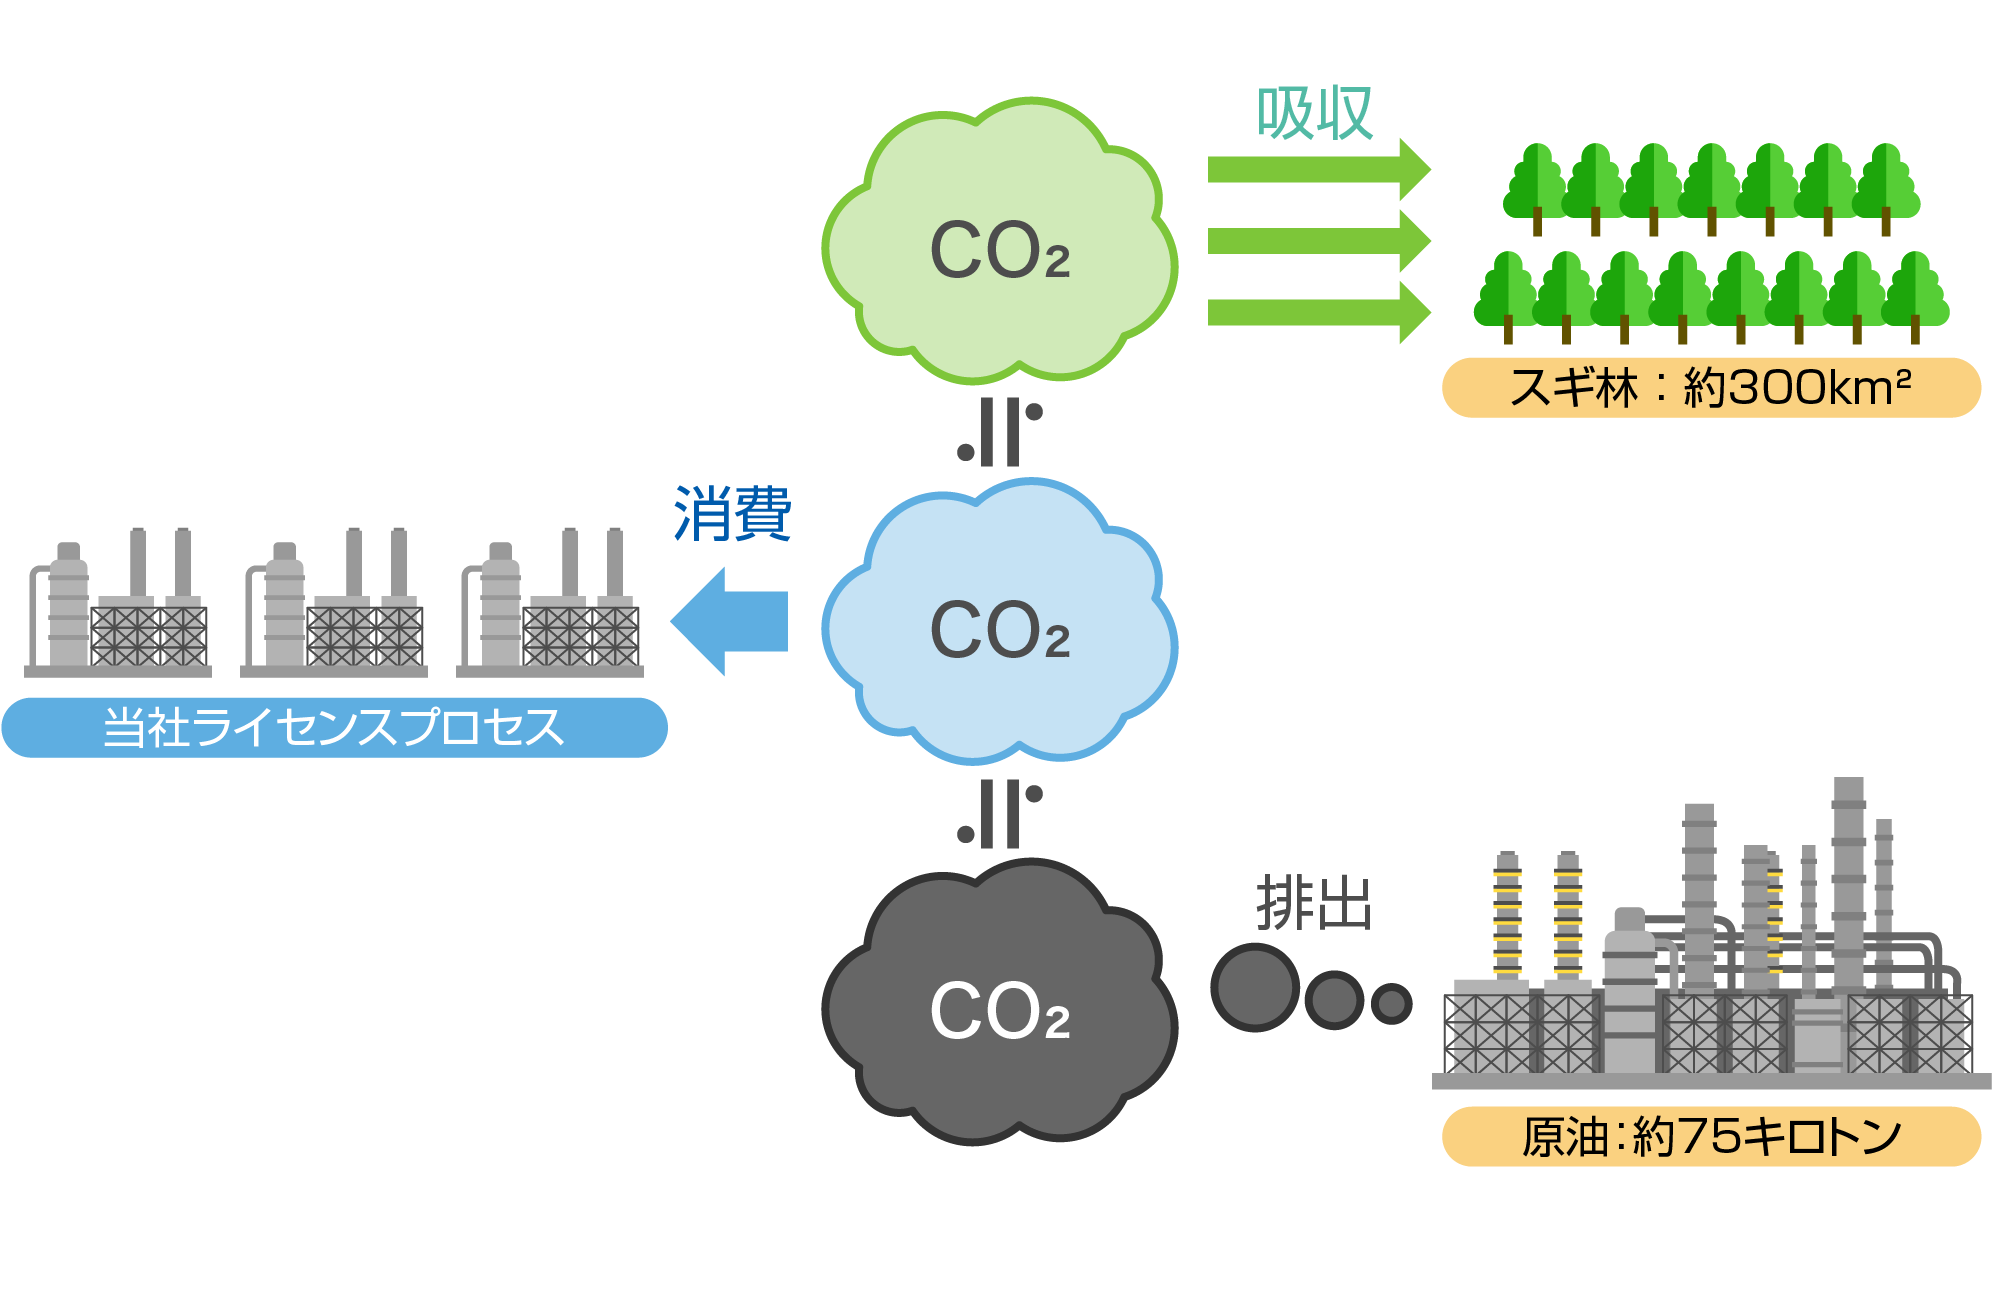 CO₂の原料としての消費量